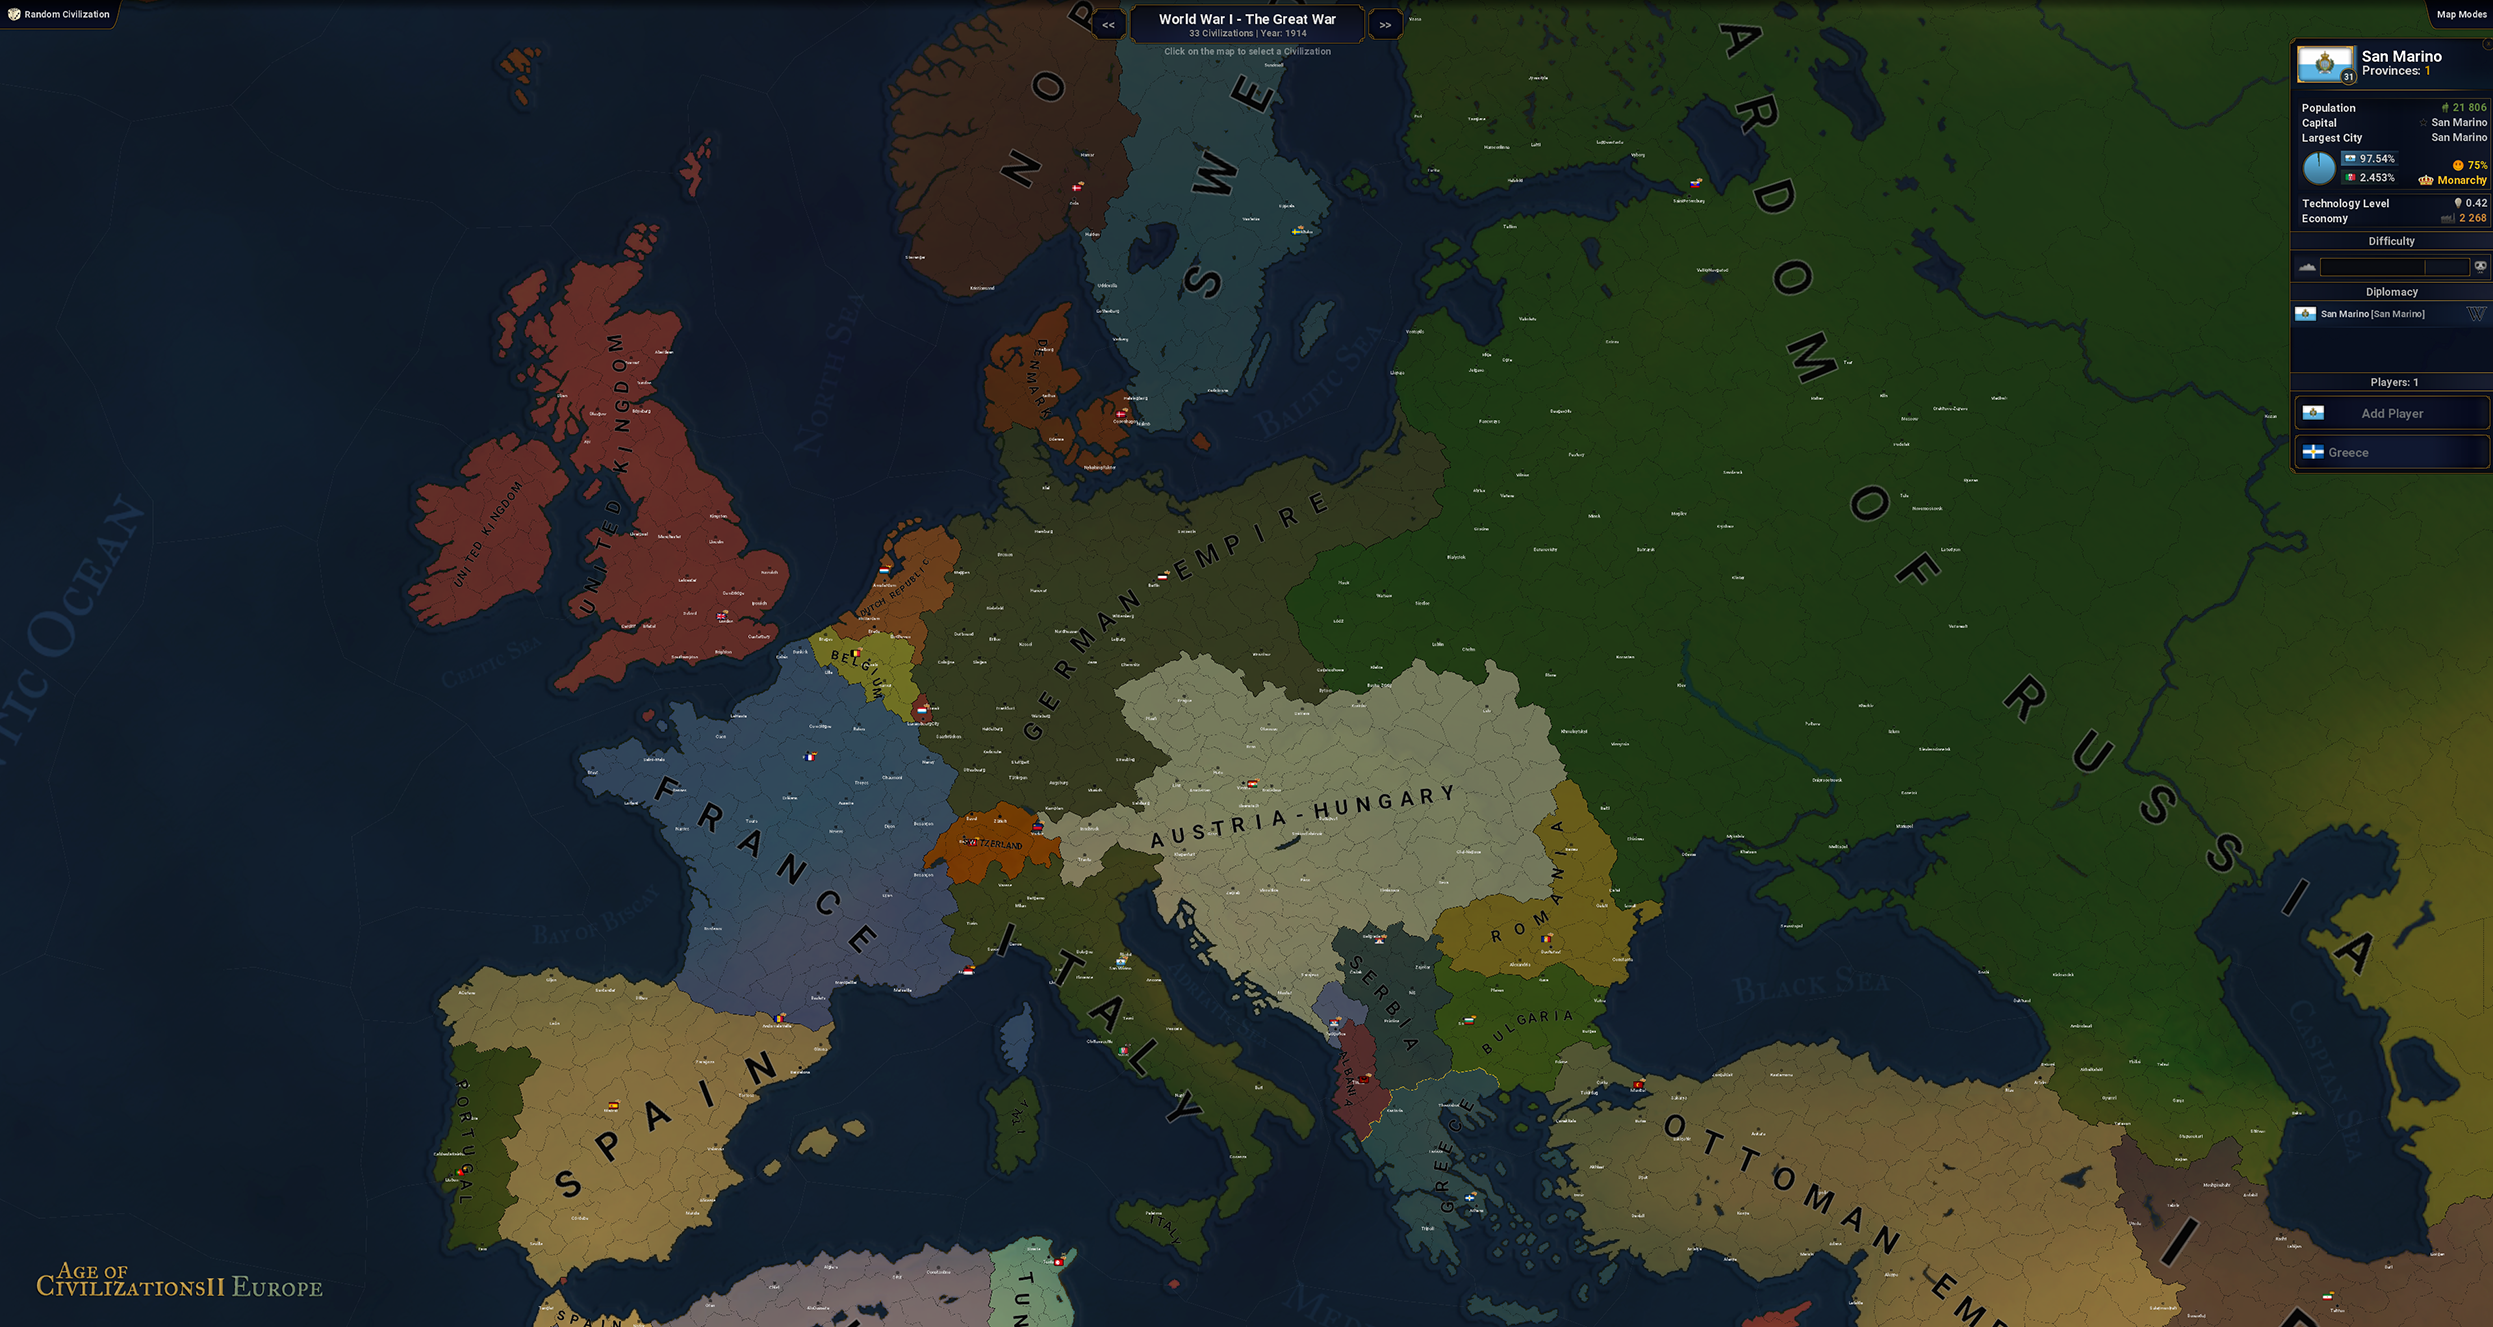 Comunidad Steam Age Of Civilizations Ii - ww1 map roblox